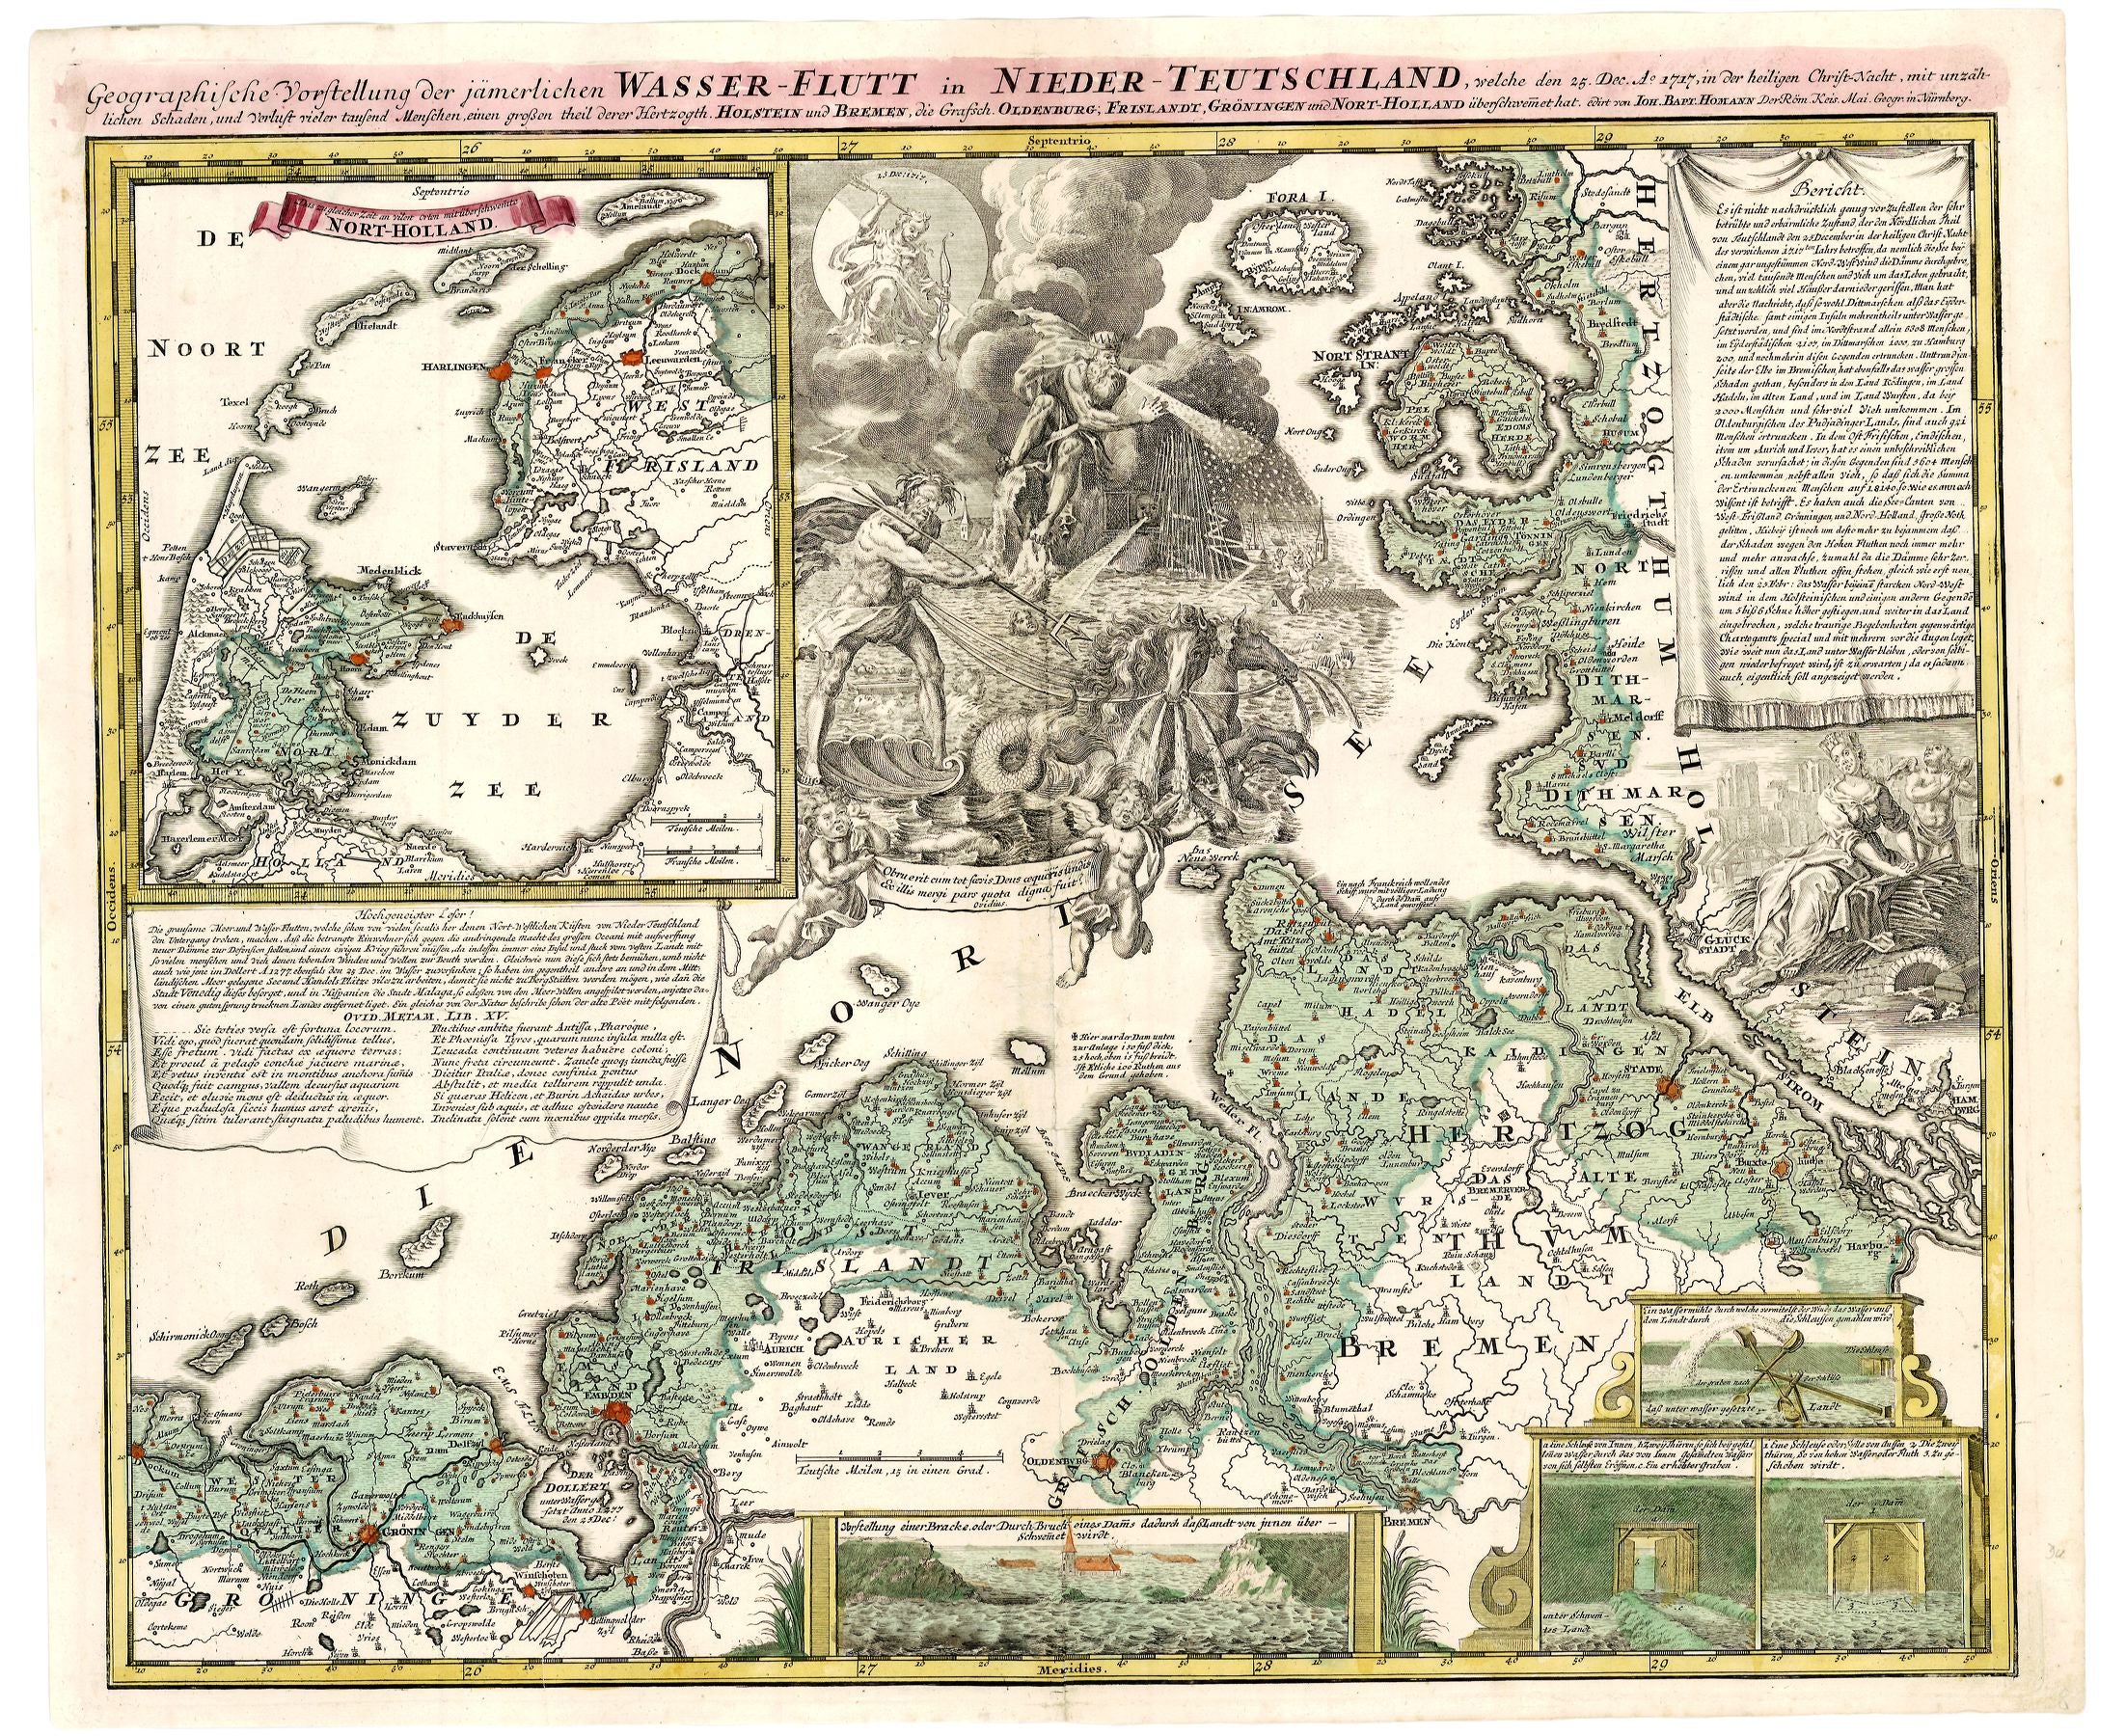 R2631  Homann, Johann Baptist: Geographische Vorstellung der jämmerlichen Wasser-Flutt in Nieder-Teutschland, 25.Dec. 1717.  1718